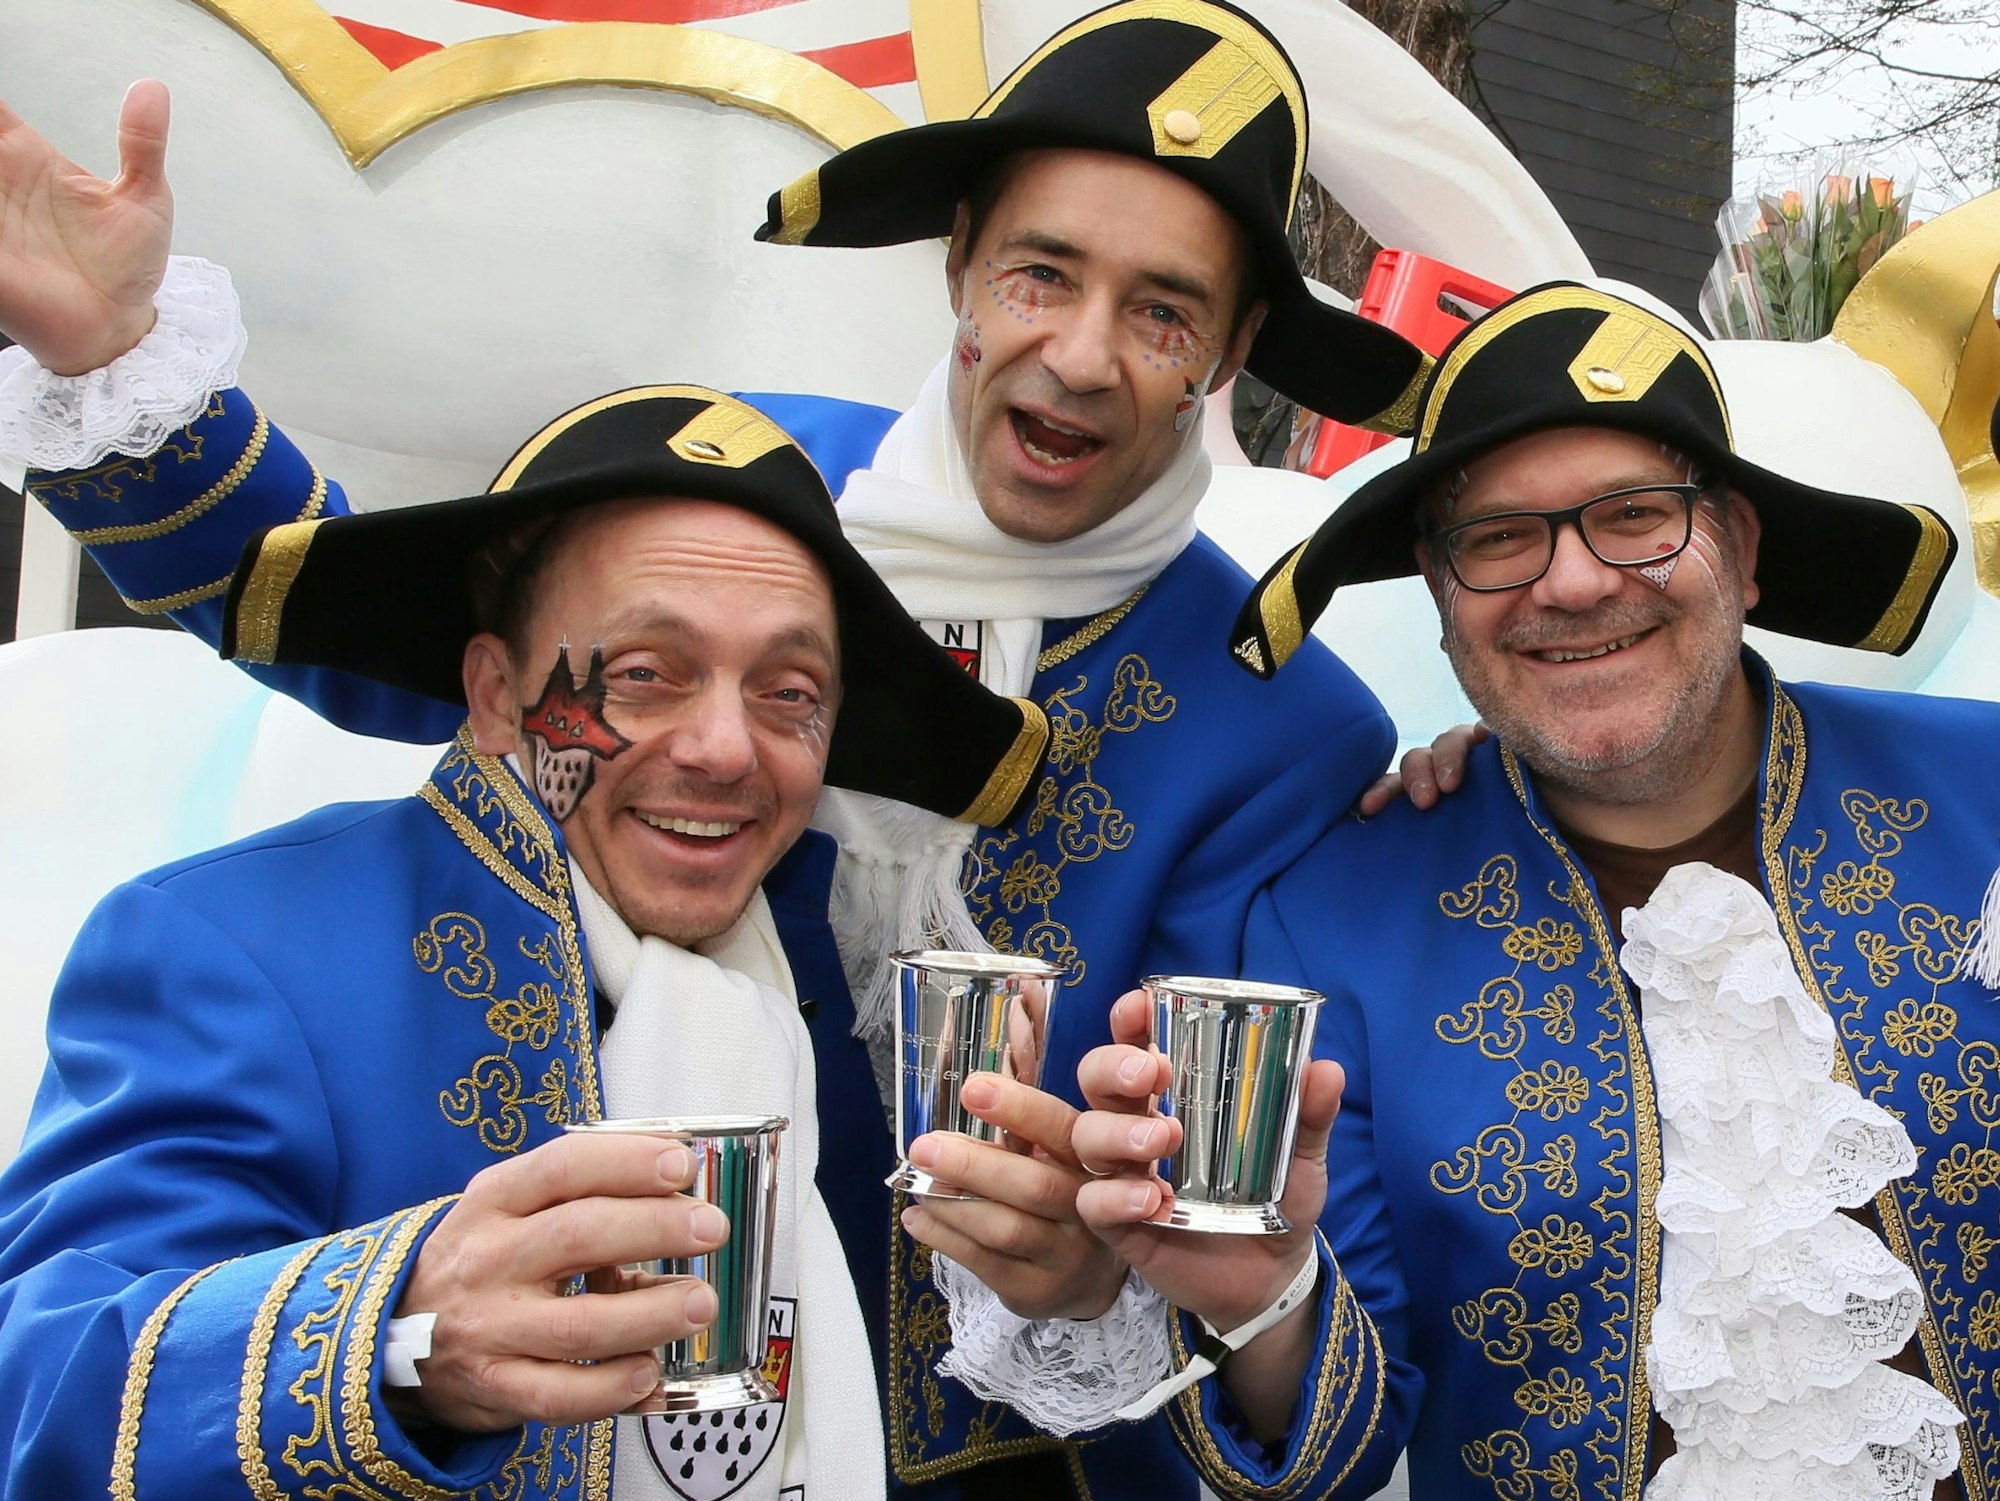 Drei kostümierte Männer stehen vor einem Karnevalswagen.